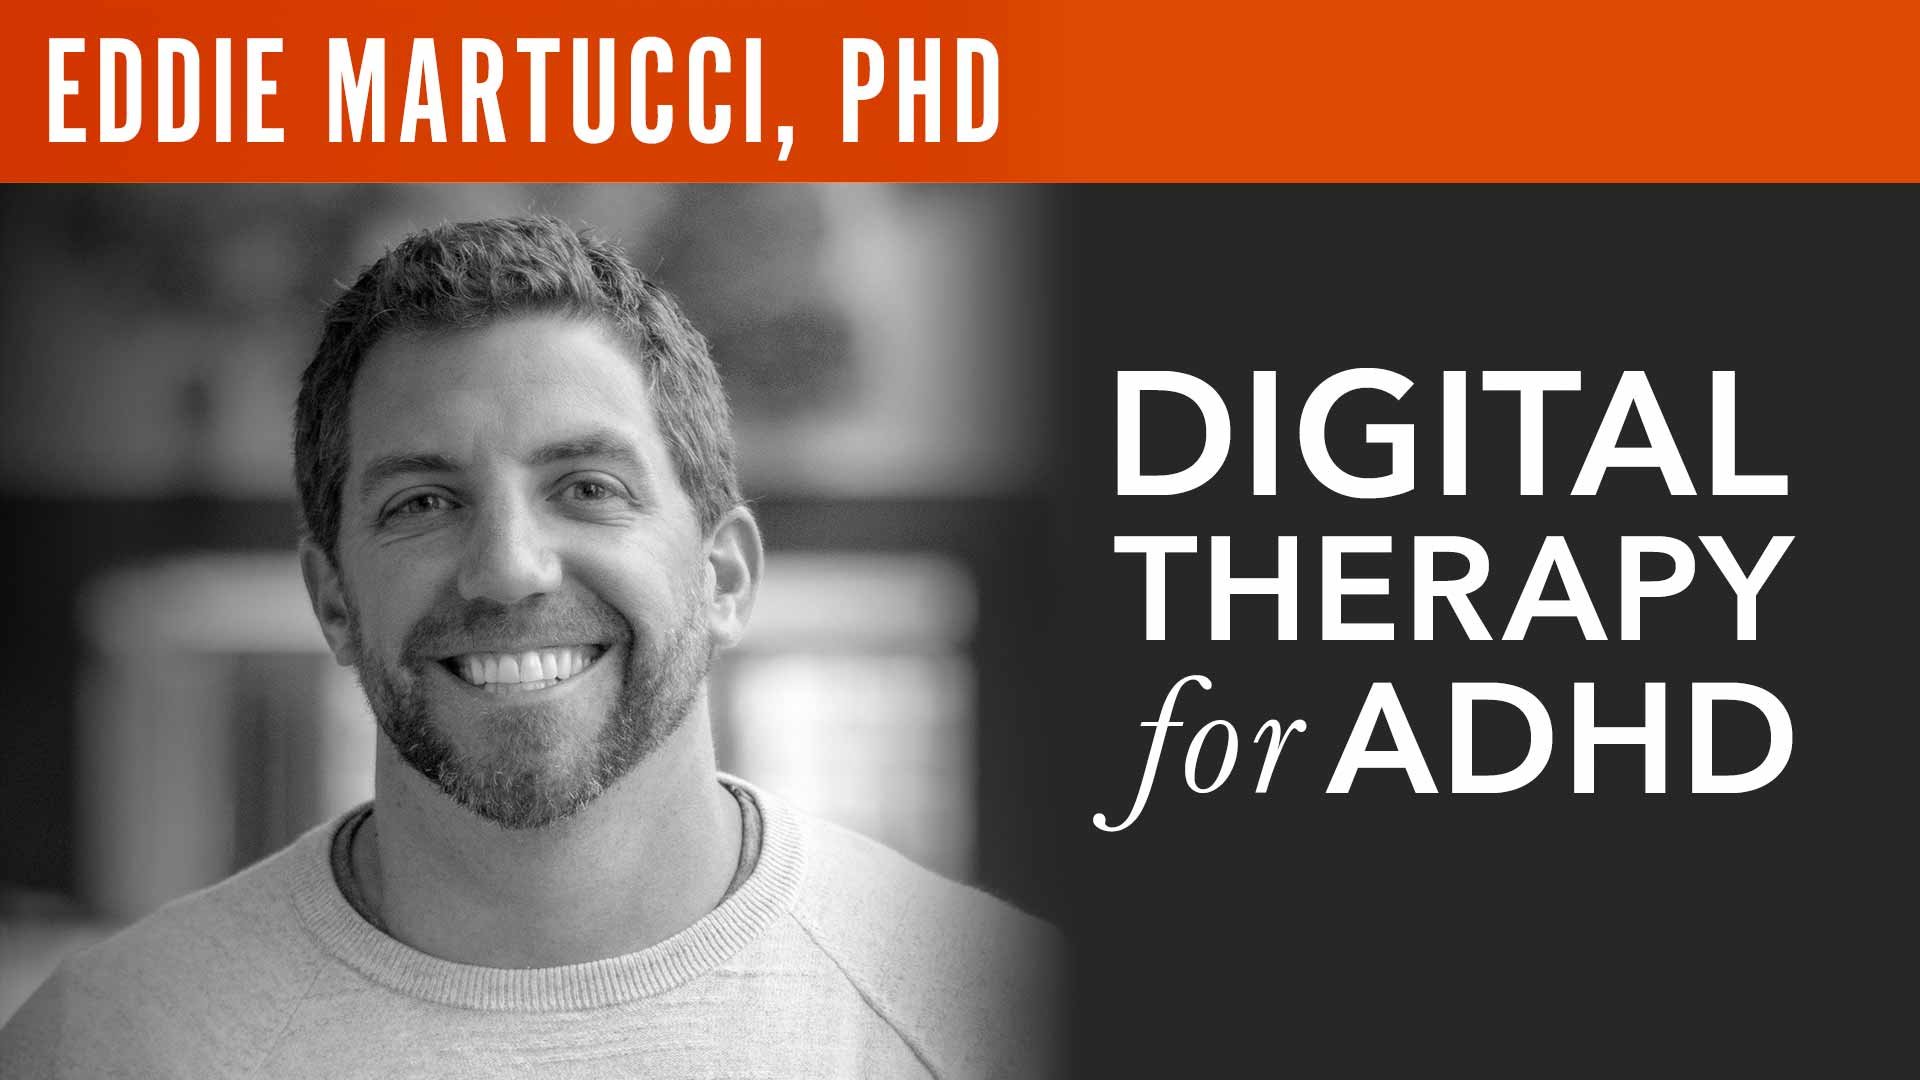 Eddie Martucci, PhD, "Digital Therapy for ADHD"